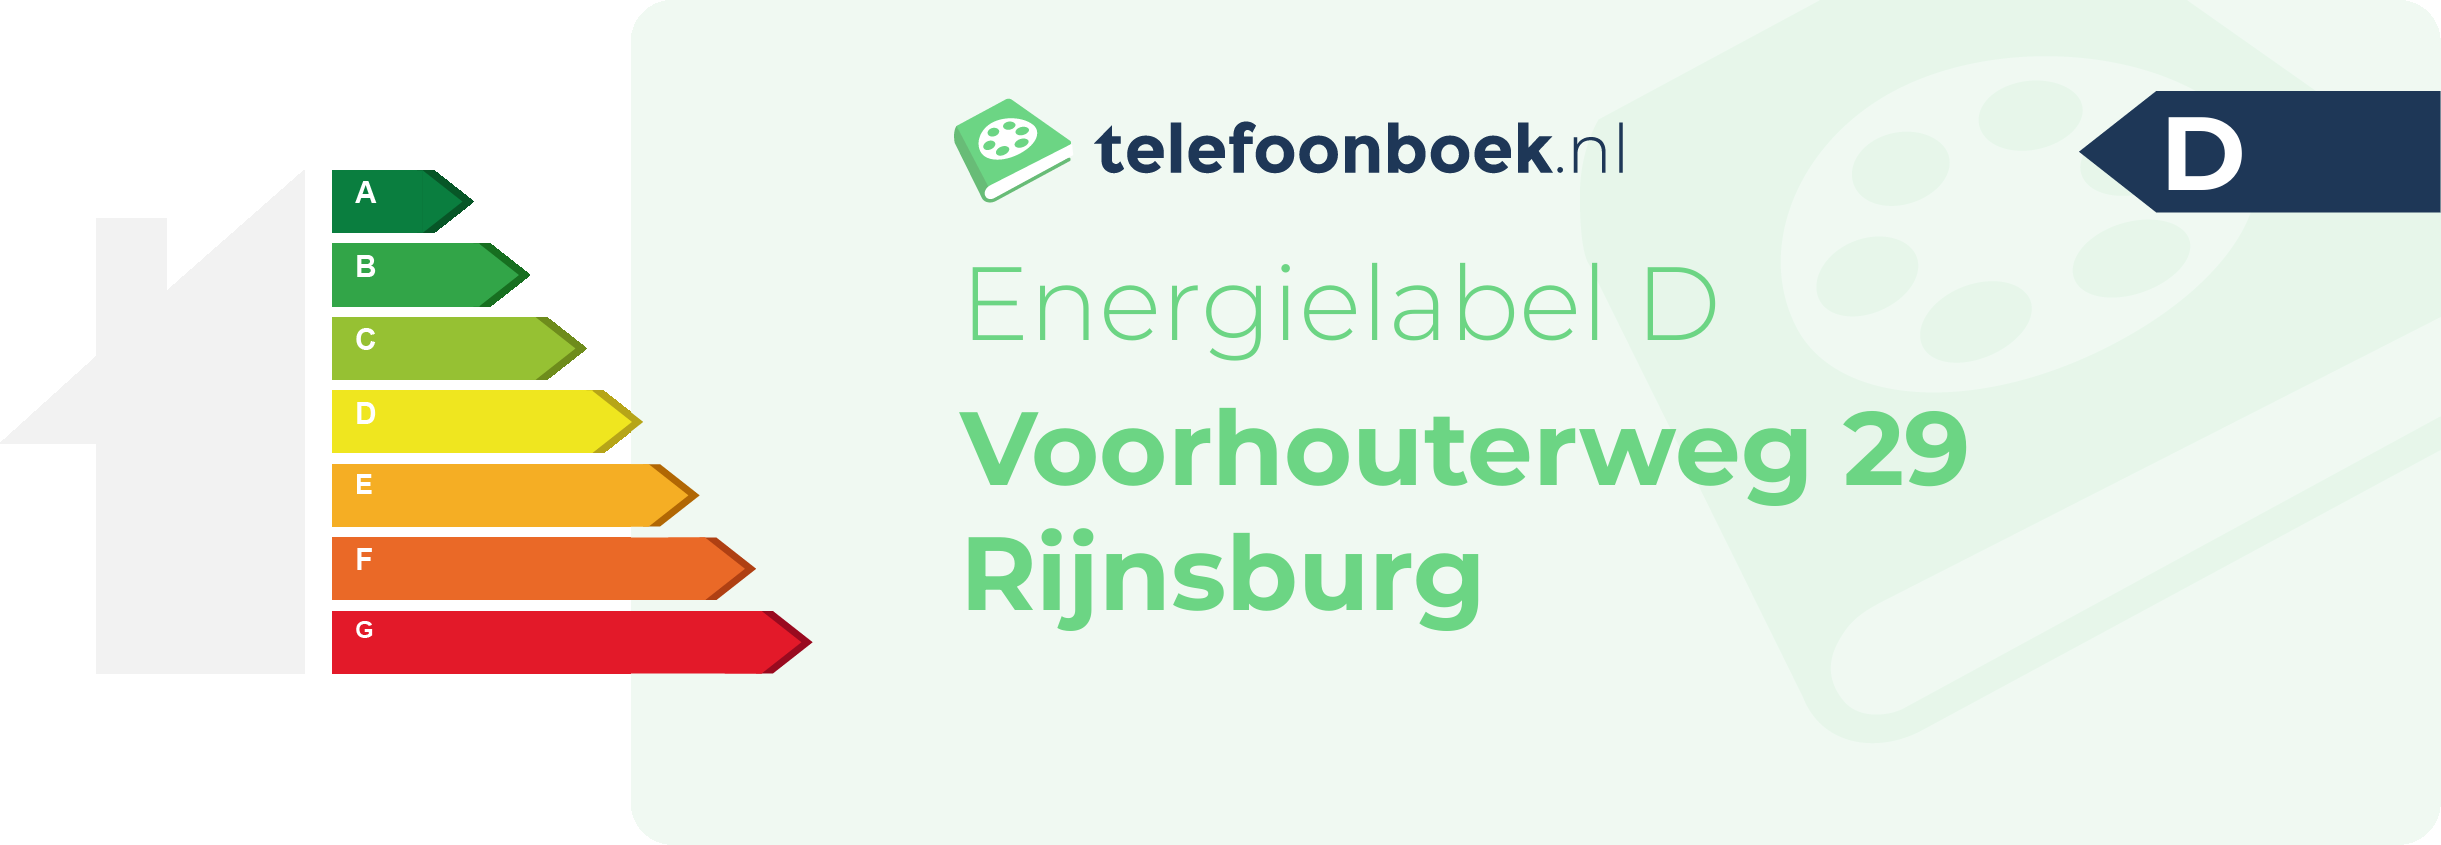 Energielabel Voorhouterweg 29 Rijnsburg